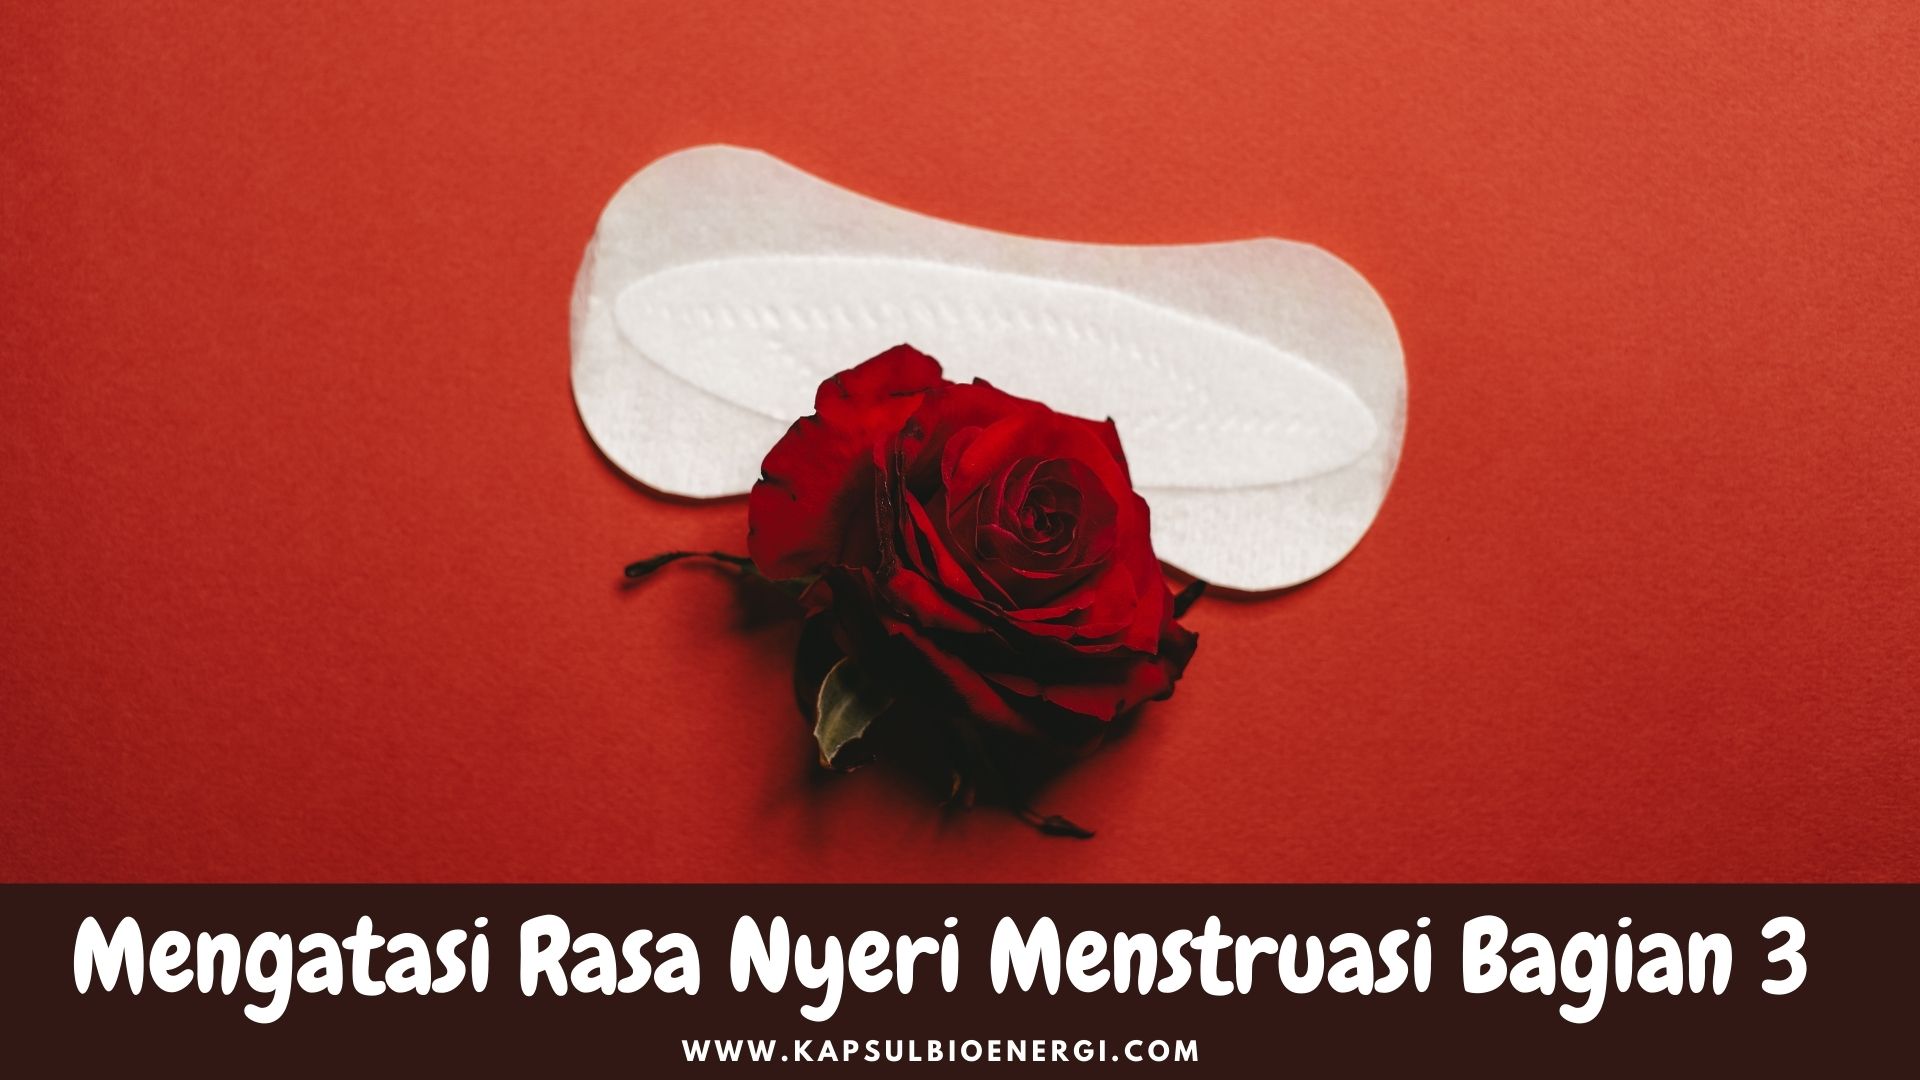 Mengatasi Rasa Nyeri Menstruasi Bagian 3; Solusi Herbal